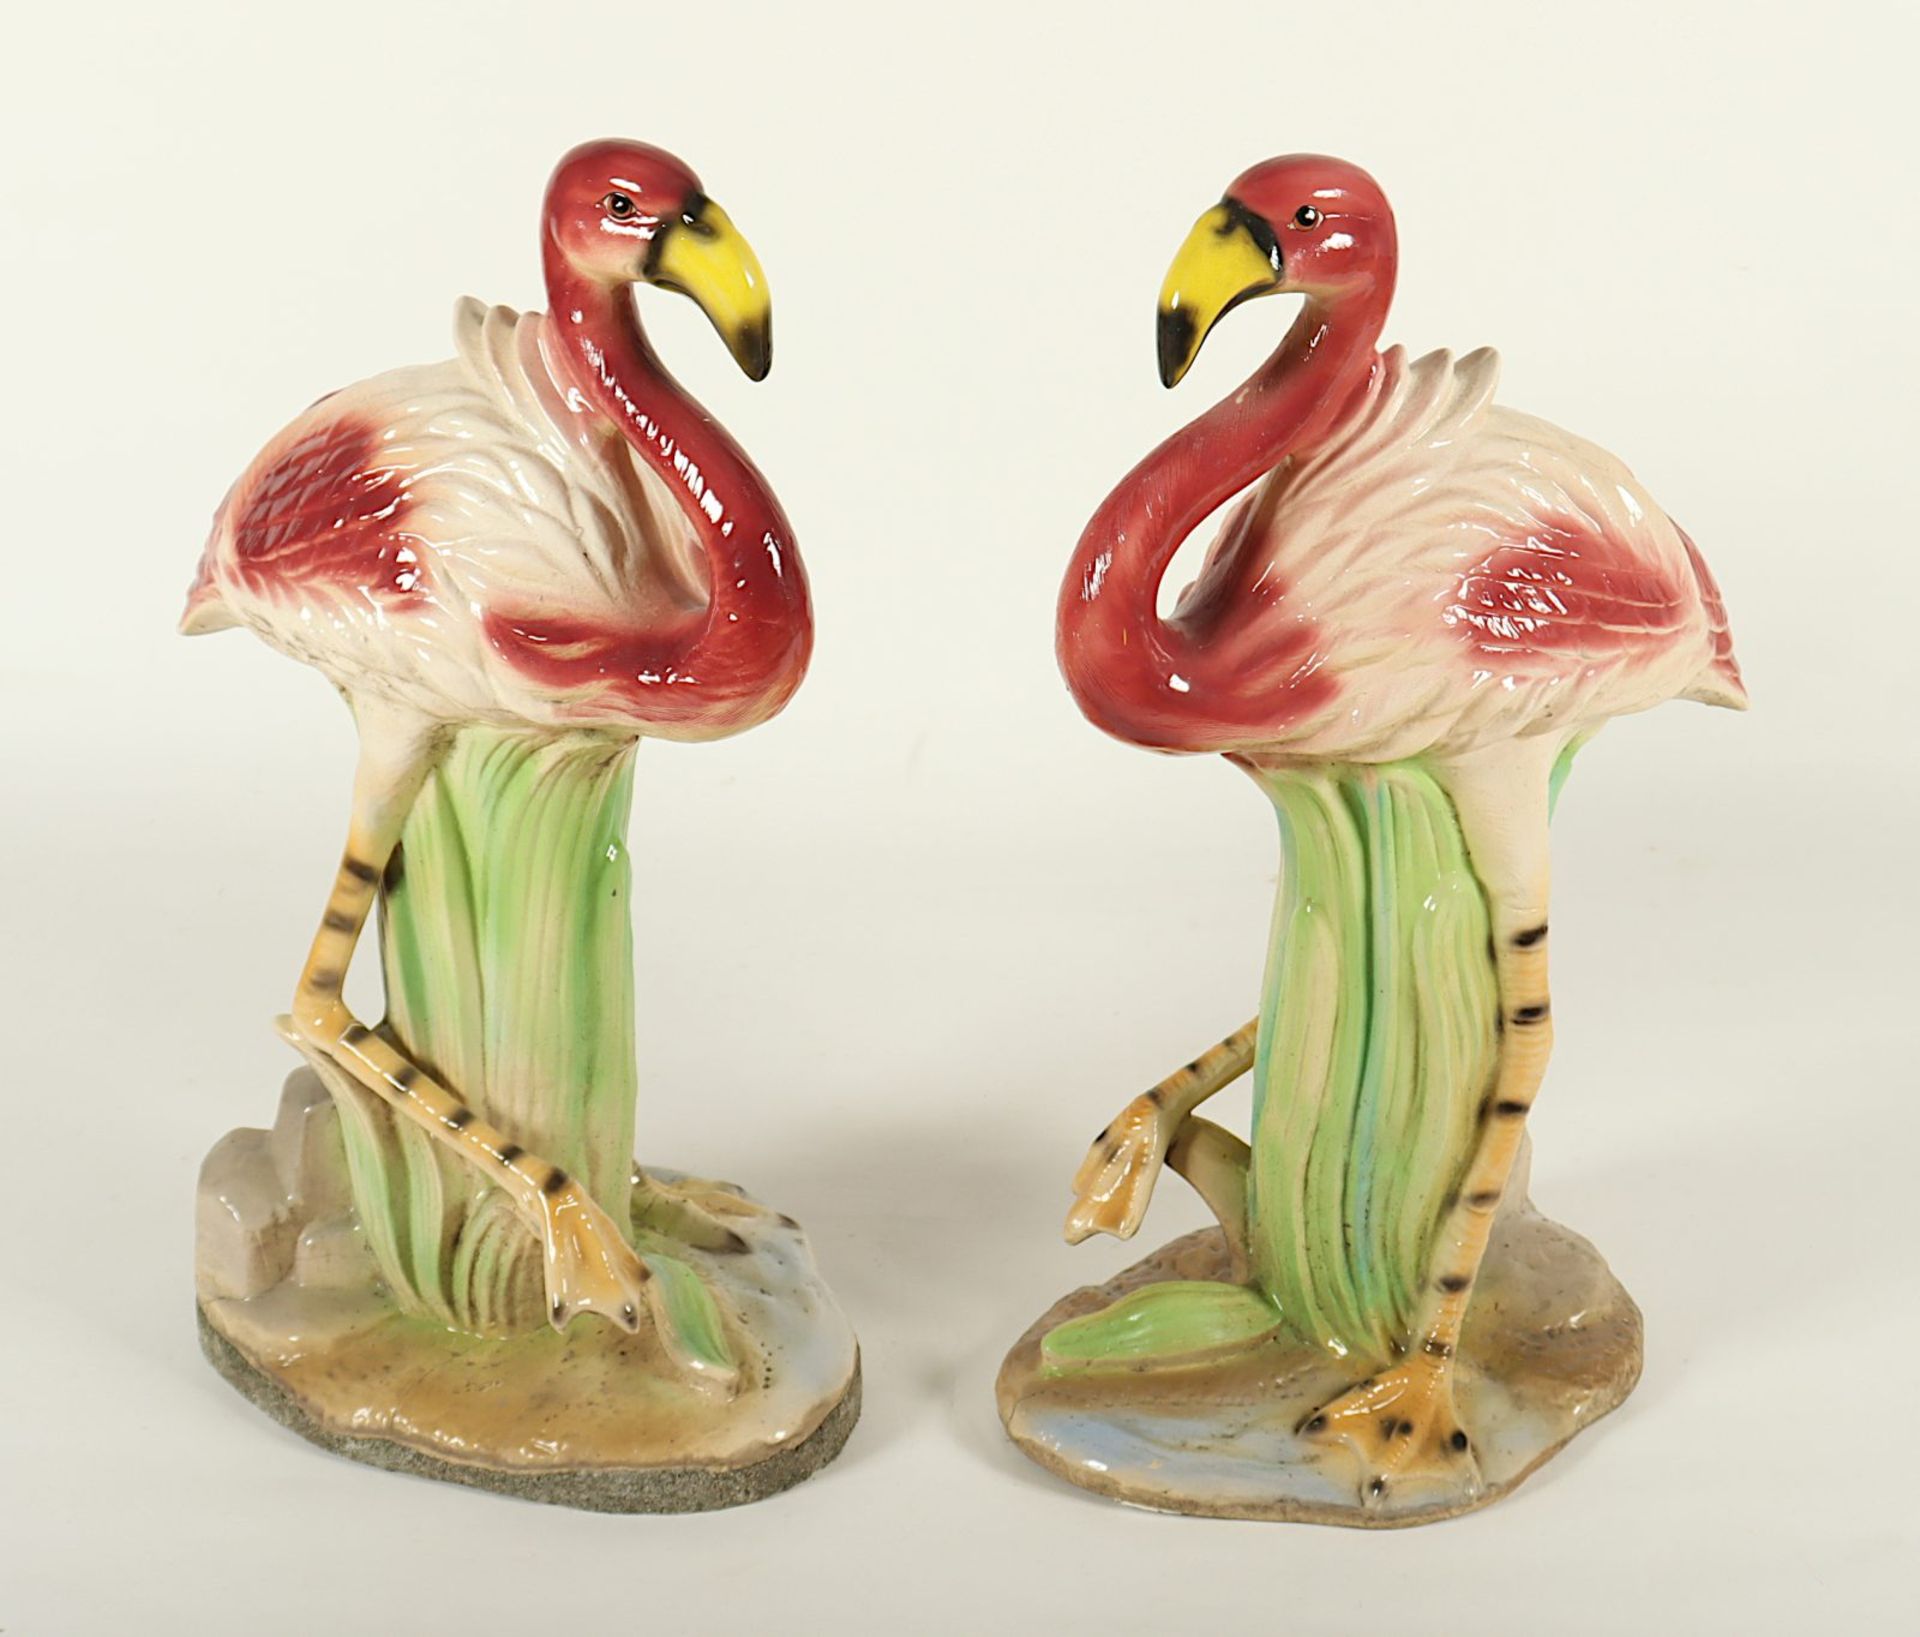 Gartenfiguren Paar "Flamingos", Keramik, besch.